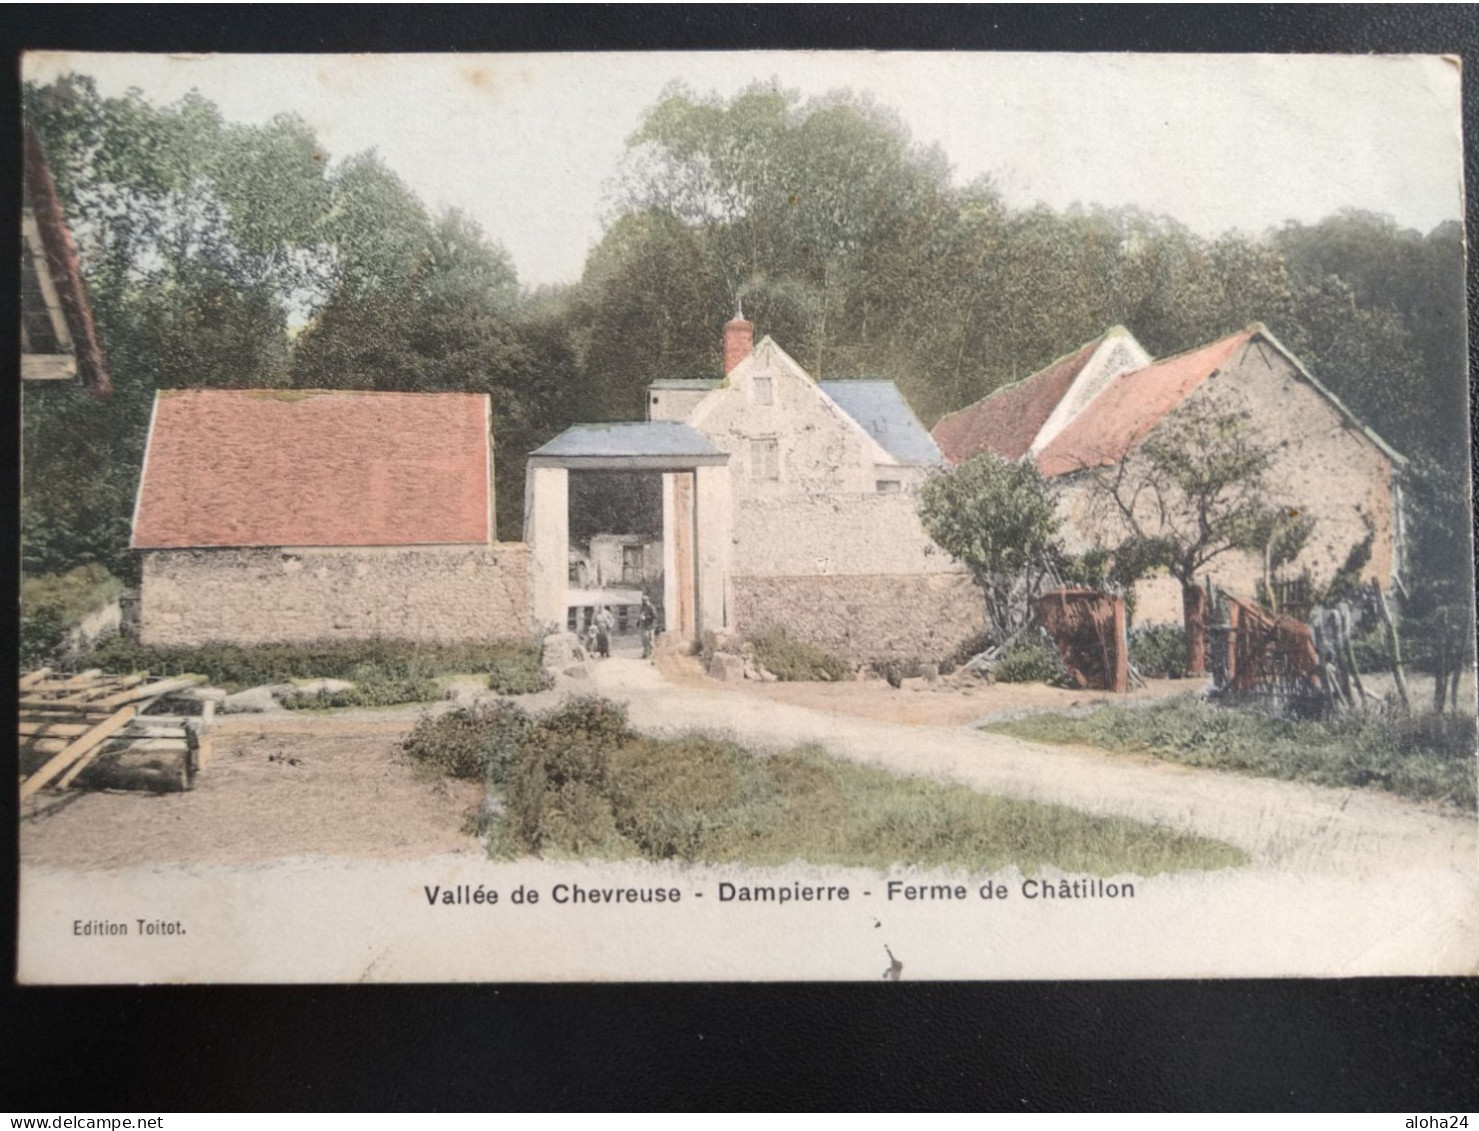 39 DAMPIERRE VALLEE DE CHEVREUSE FERME DE CHATILLON - 9173 - Dampierre